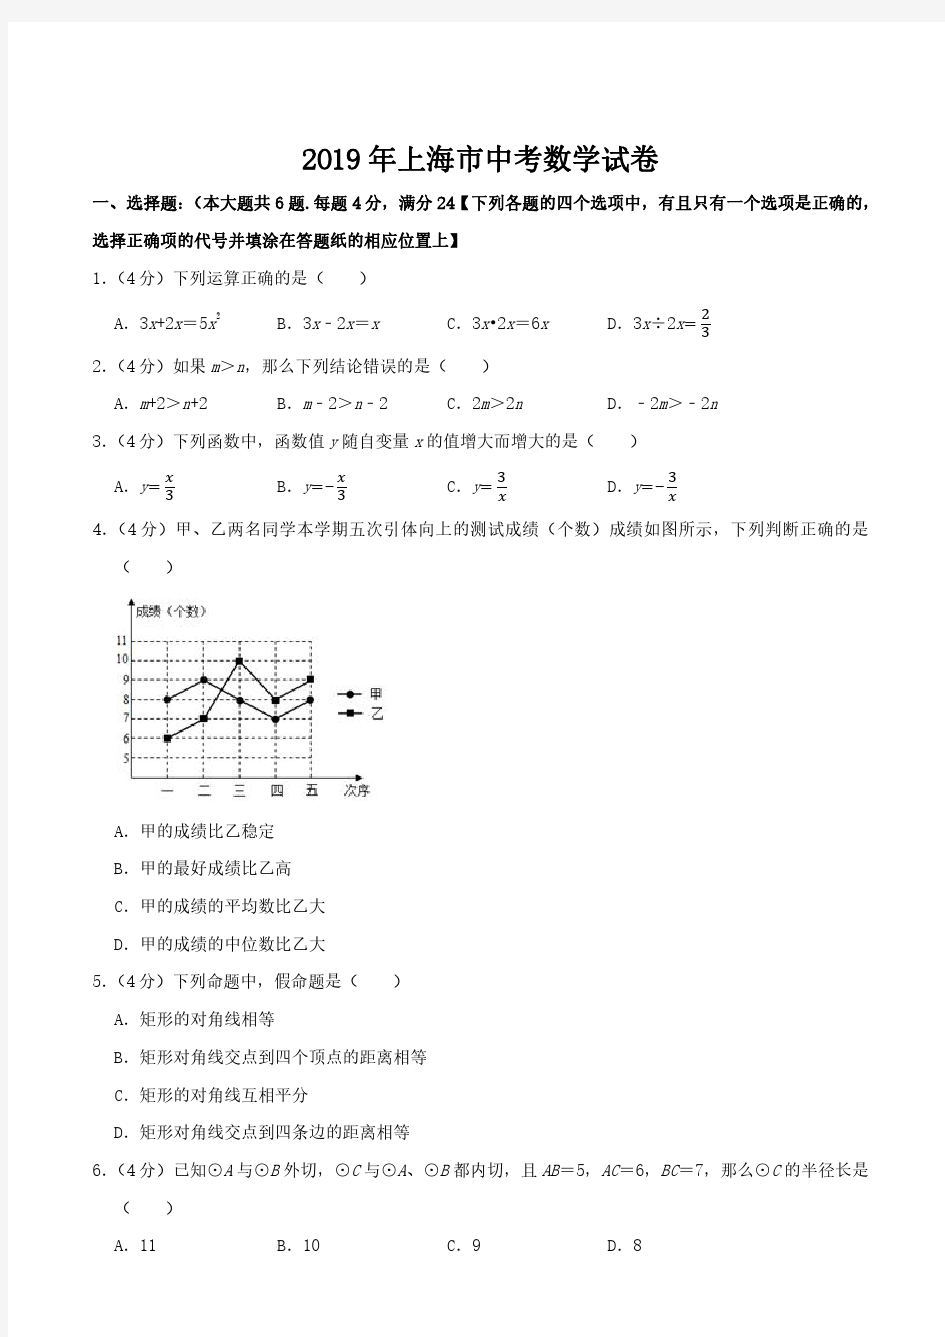 2019年上海市初三中考数学试卷及答案